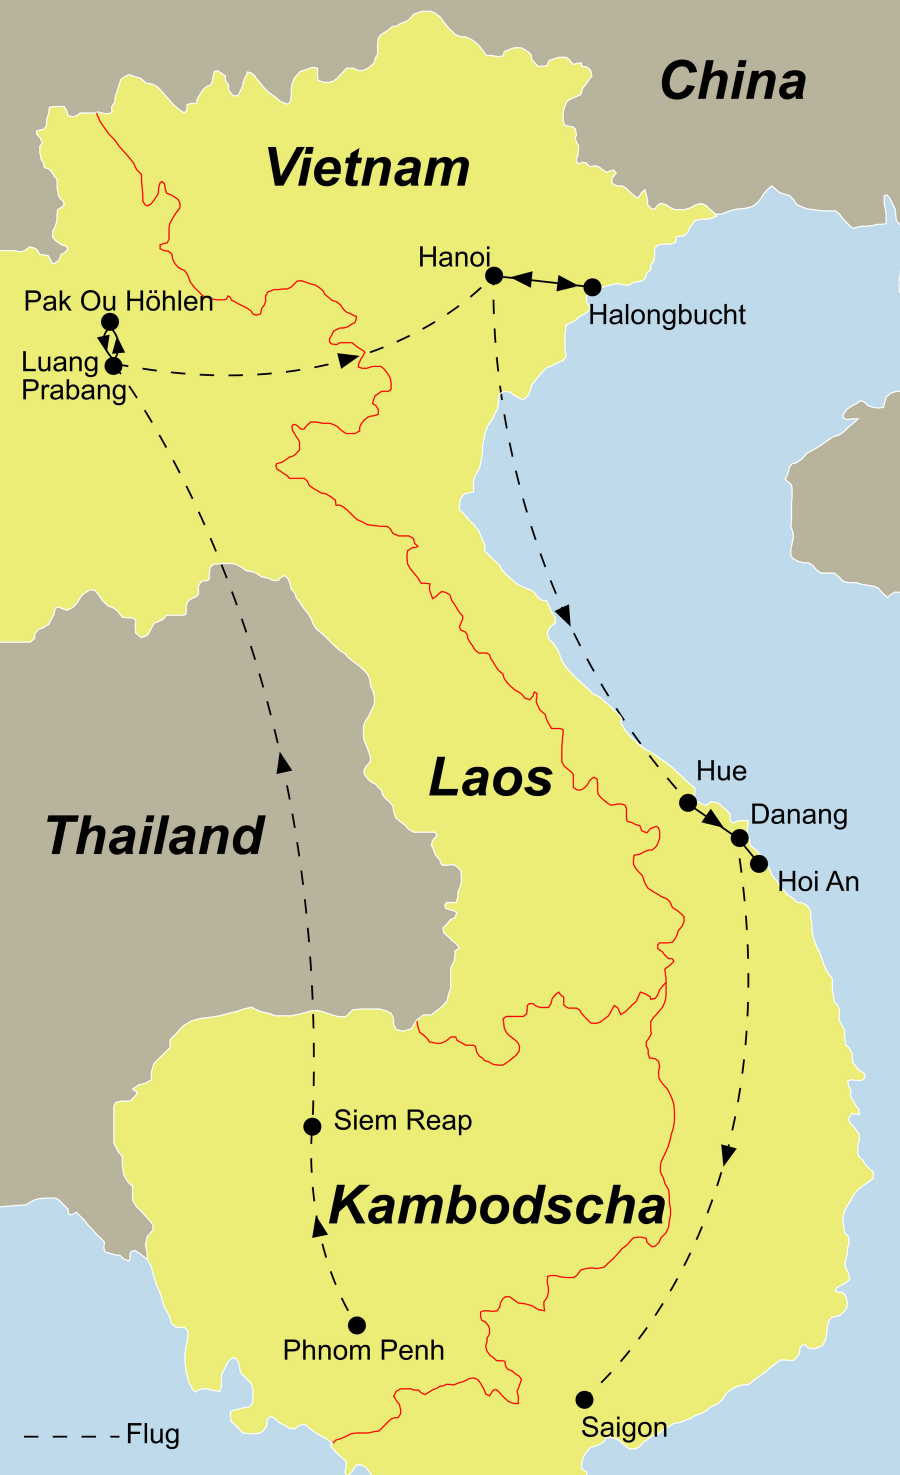 Der Reiseverlauf zu unserer Kambodscha Reise startet in Phnom Penh und endet in Saigon.